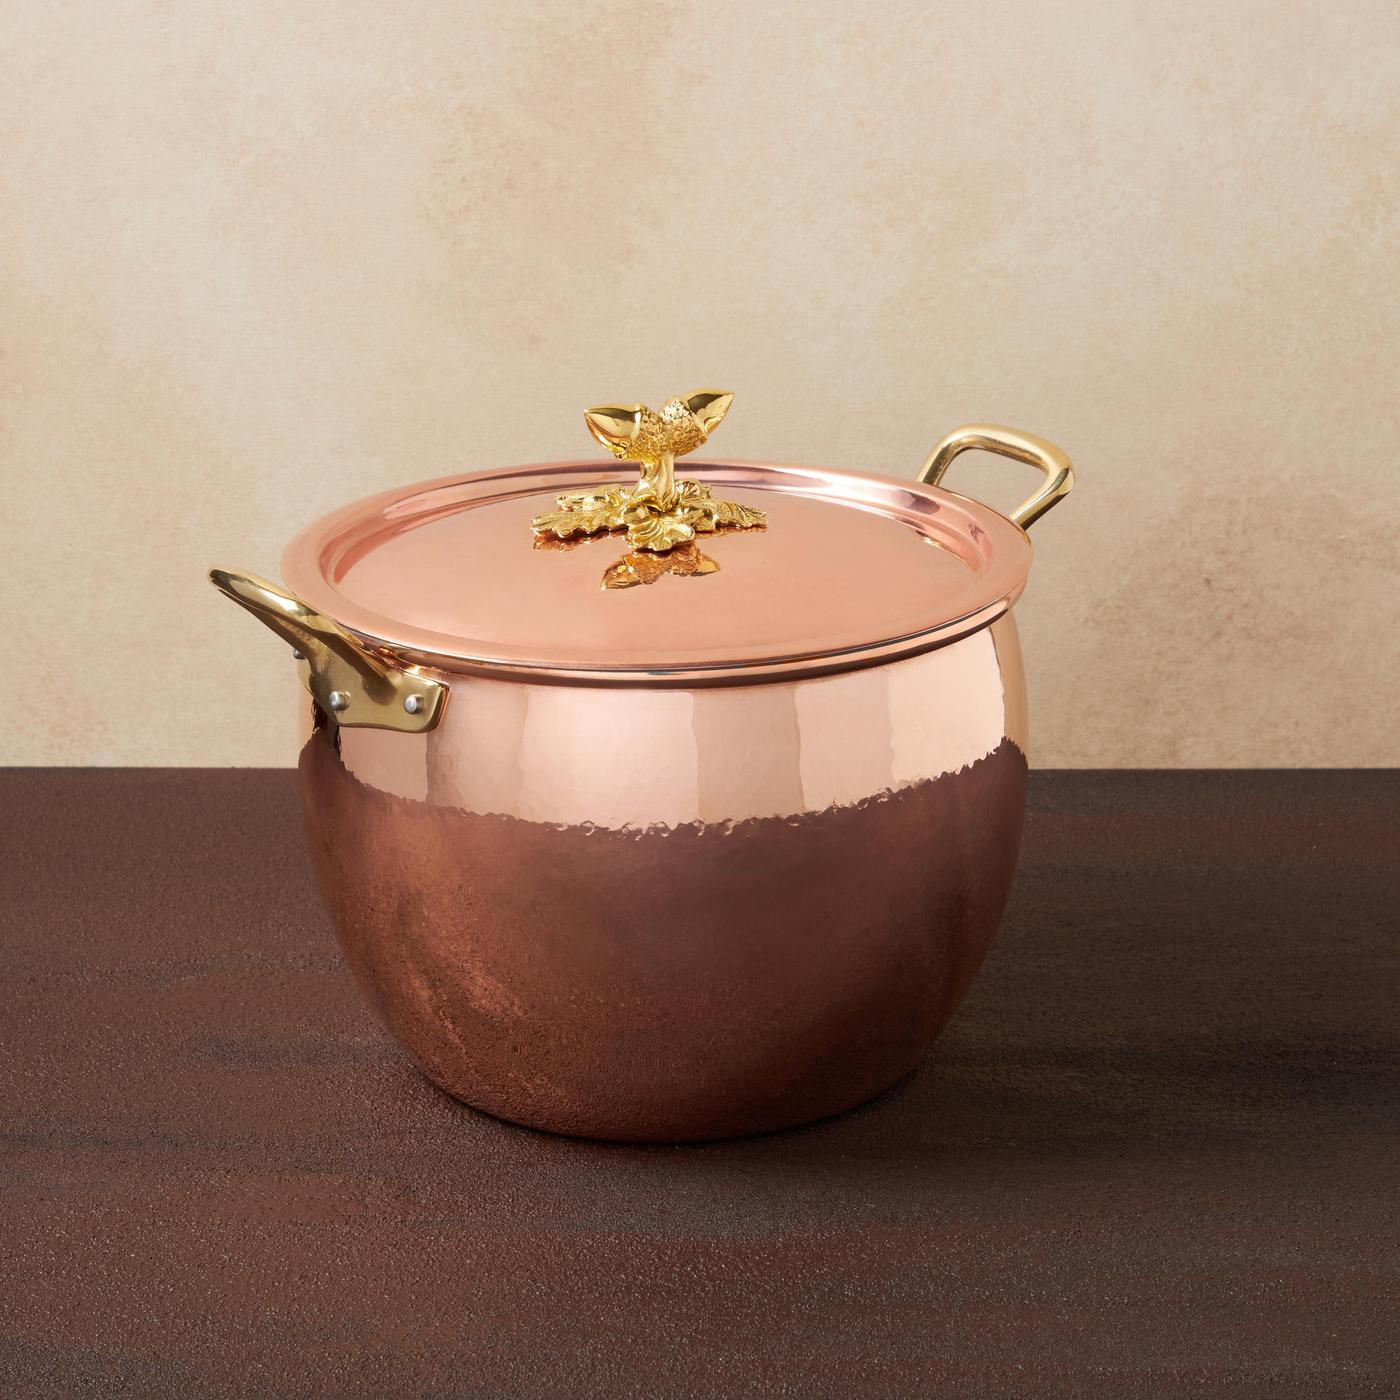 Ruffoni Historia Decor Copper Covered Stockpot, Multiple Sizes